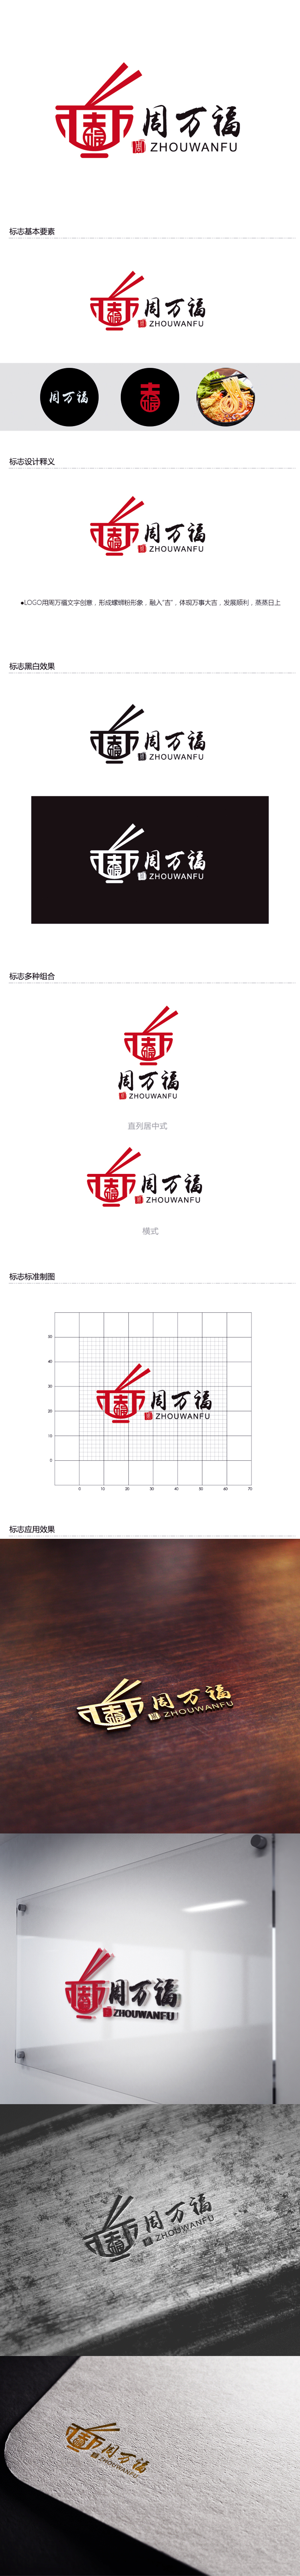 黄安悦的周万福logo设计